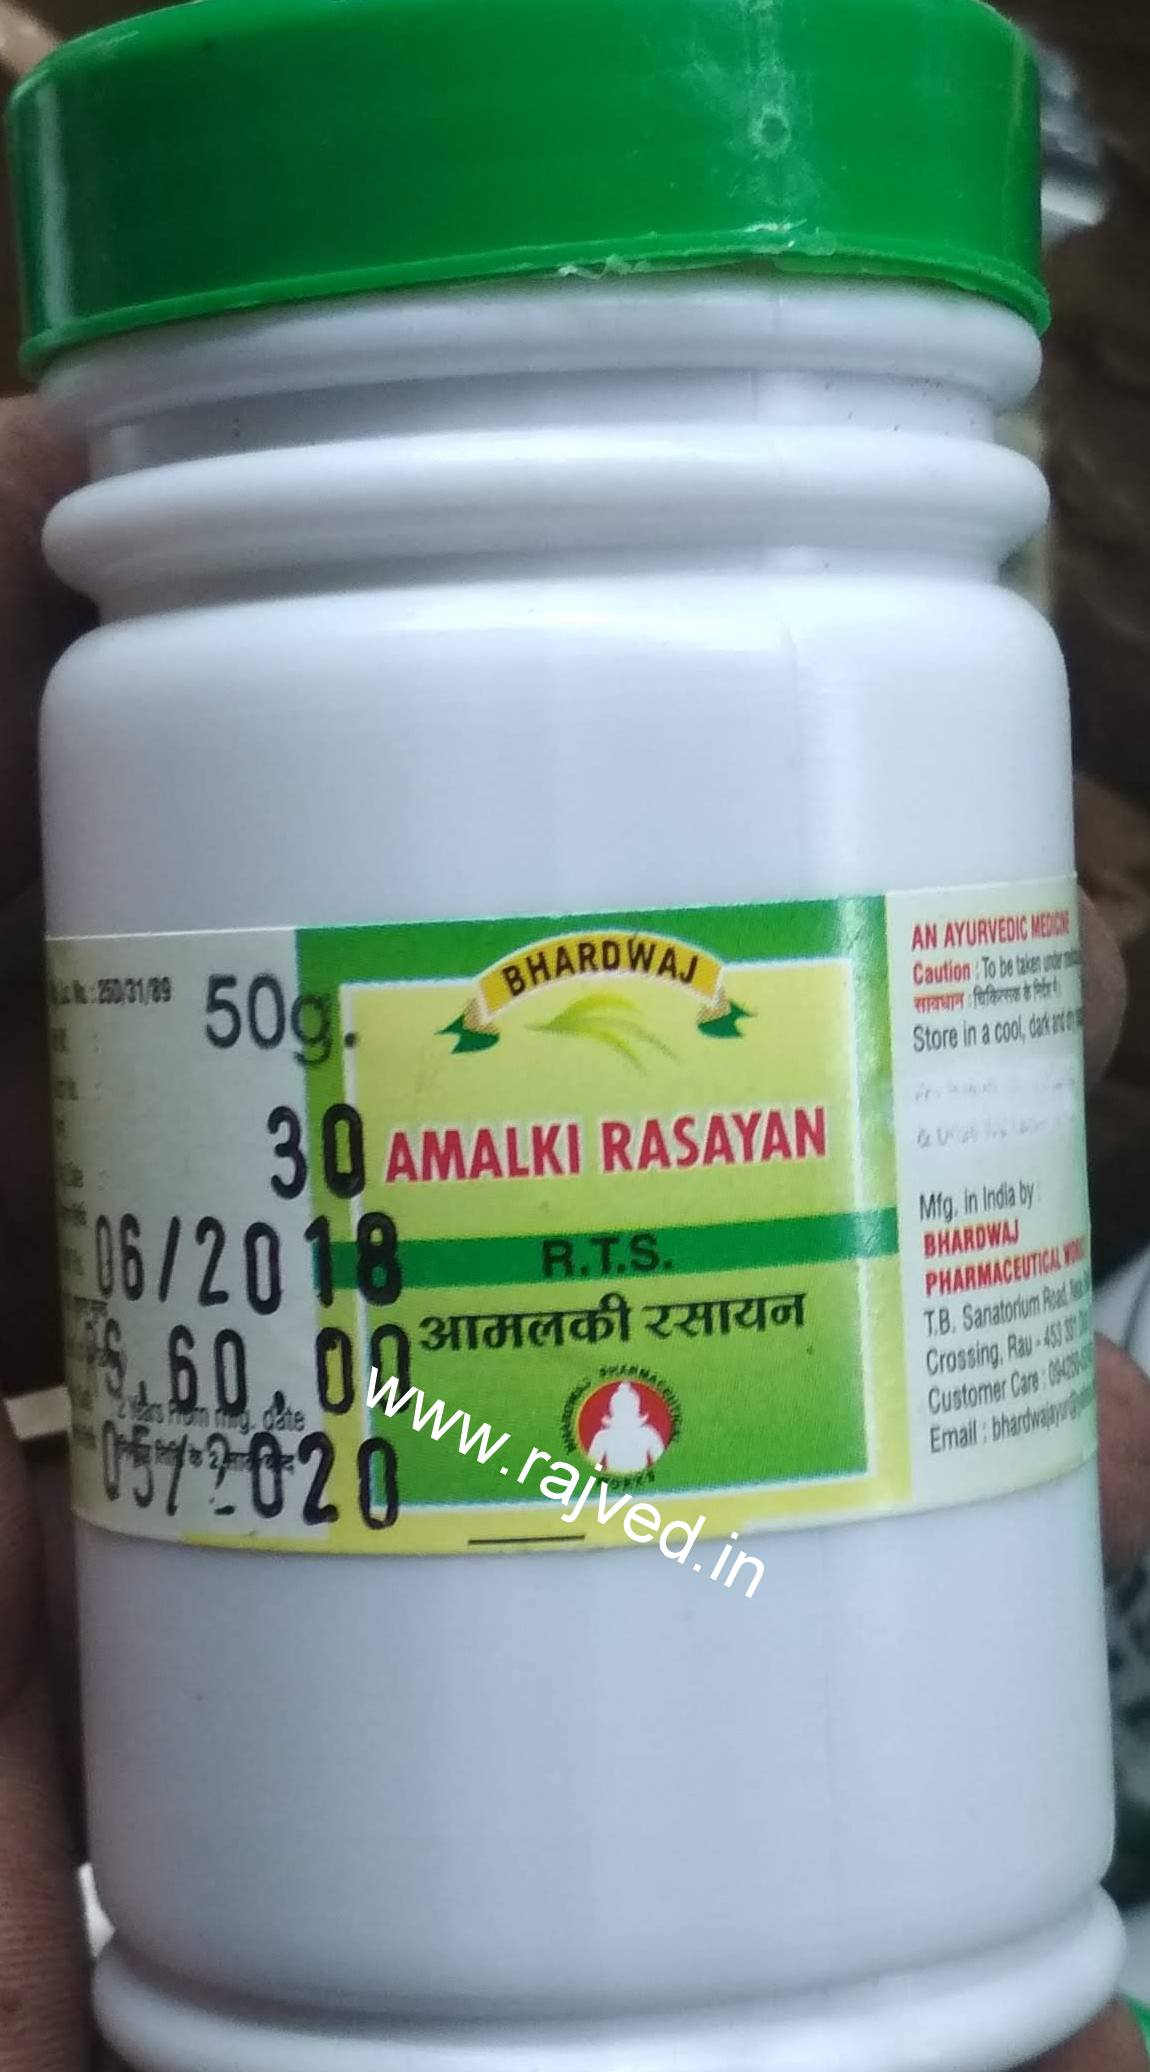 amalki rasayan 1 kg upto 20% off Bharadwaj Pharmaceuticals Indore